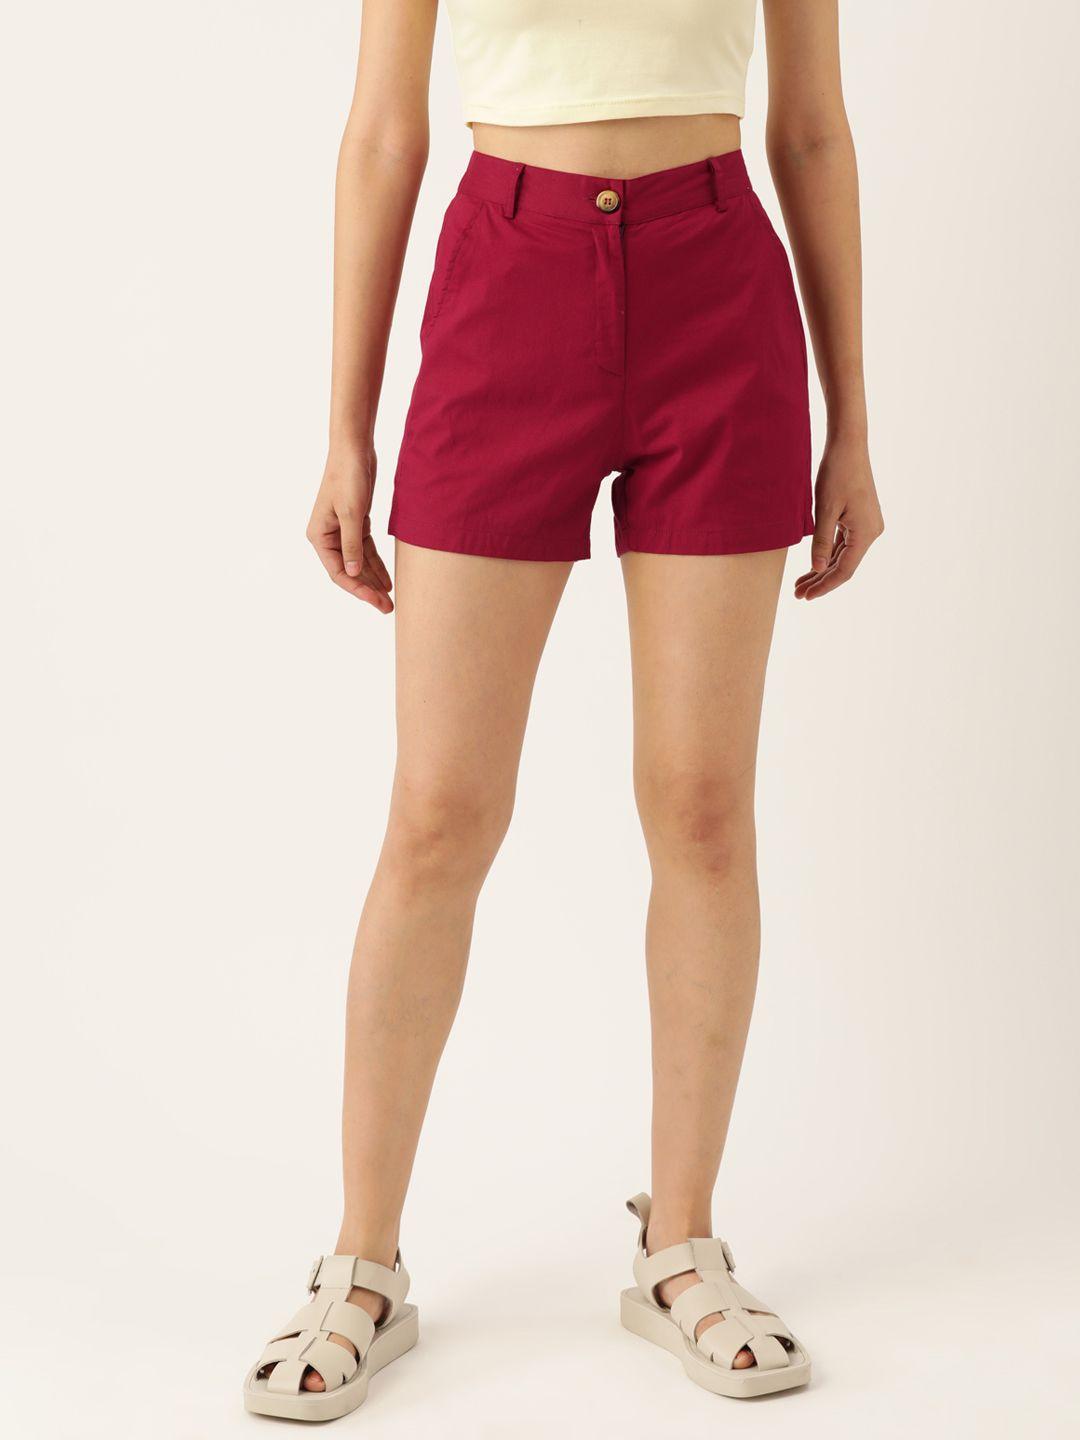 brinns women maroon cotton shorts